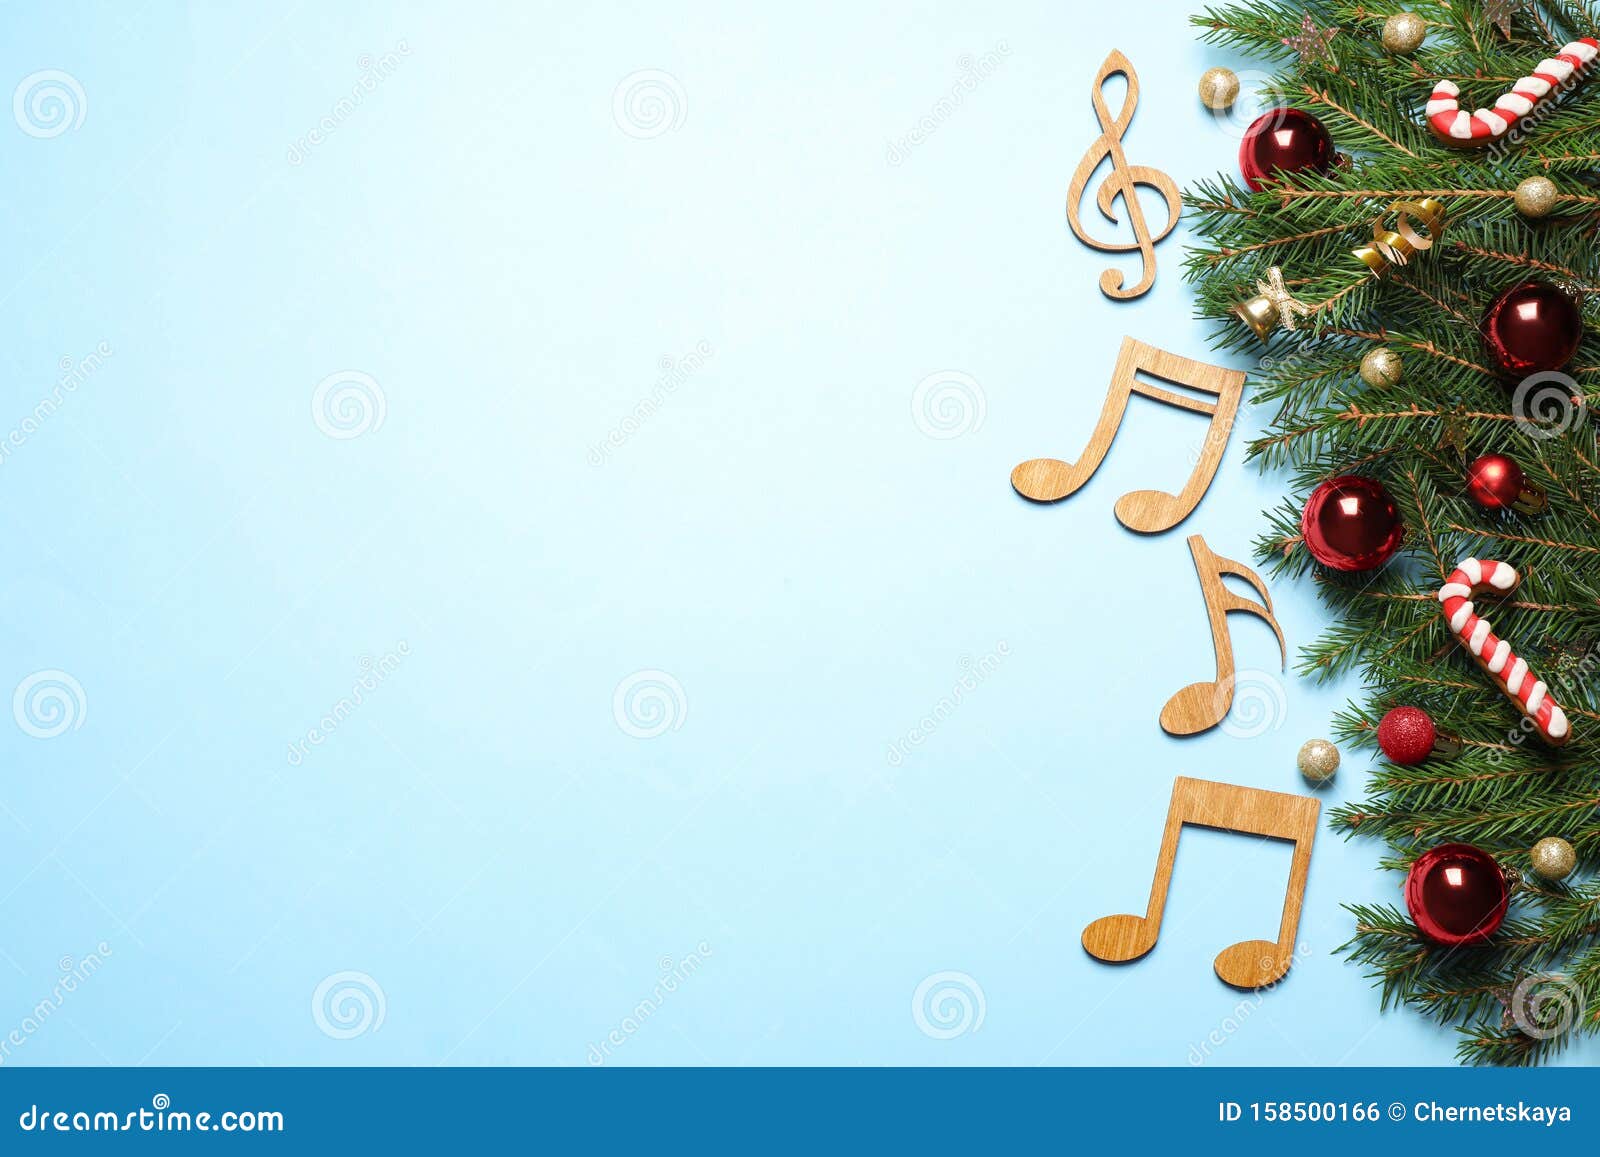 Sắp xếp phẳng với trang trí Giáng sinh và nốt nhạc trên nền sáng sẽ làm bạn say mê ngay lần đầu tiên. Hình ảnh này sẽ đem lại cho bạn nét độc đáo và đẳng cấp với sự kết hợp hoàn hảo giữa trang trí và âm nhạc. Hãy để mọi thứ trở nên hoàn hảo hơn bao giờ hết trong mùa lễ hội sắp tới.